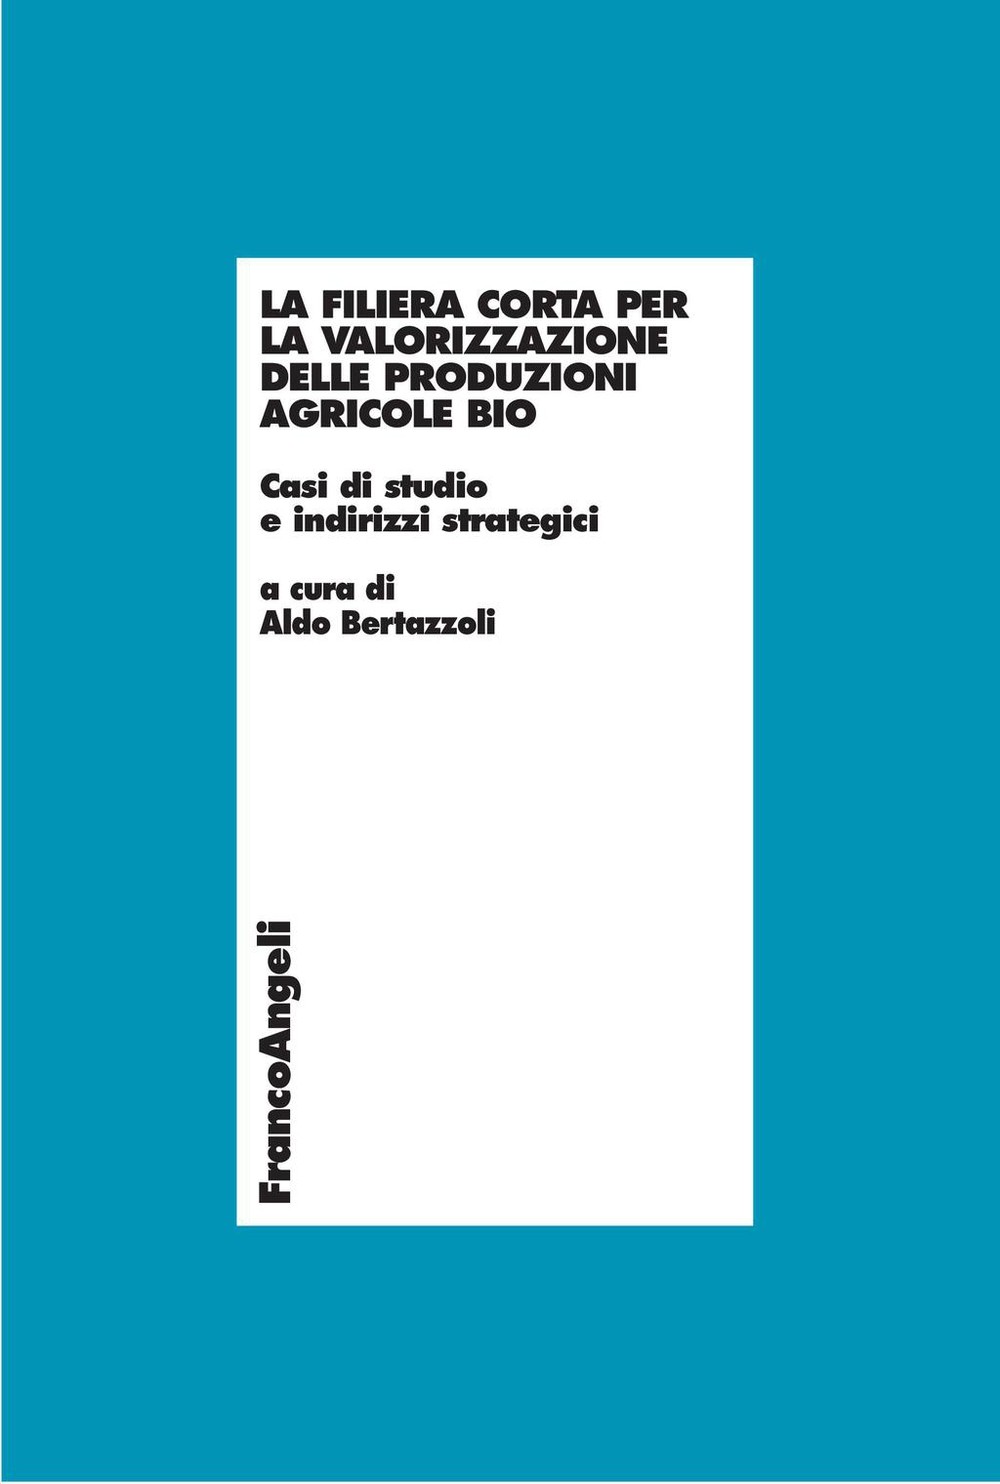 La filiera corta per la valorizzazione delle produzioni agricole bio. Casi di studio e indirizzi strategici - Librerie.coop